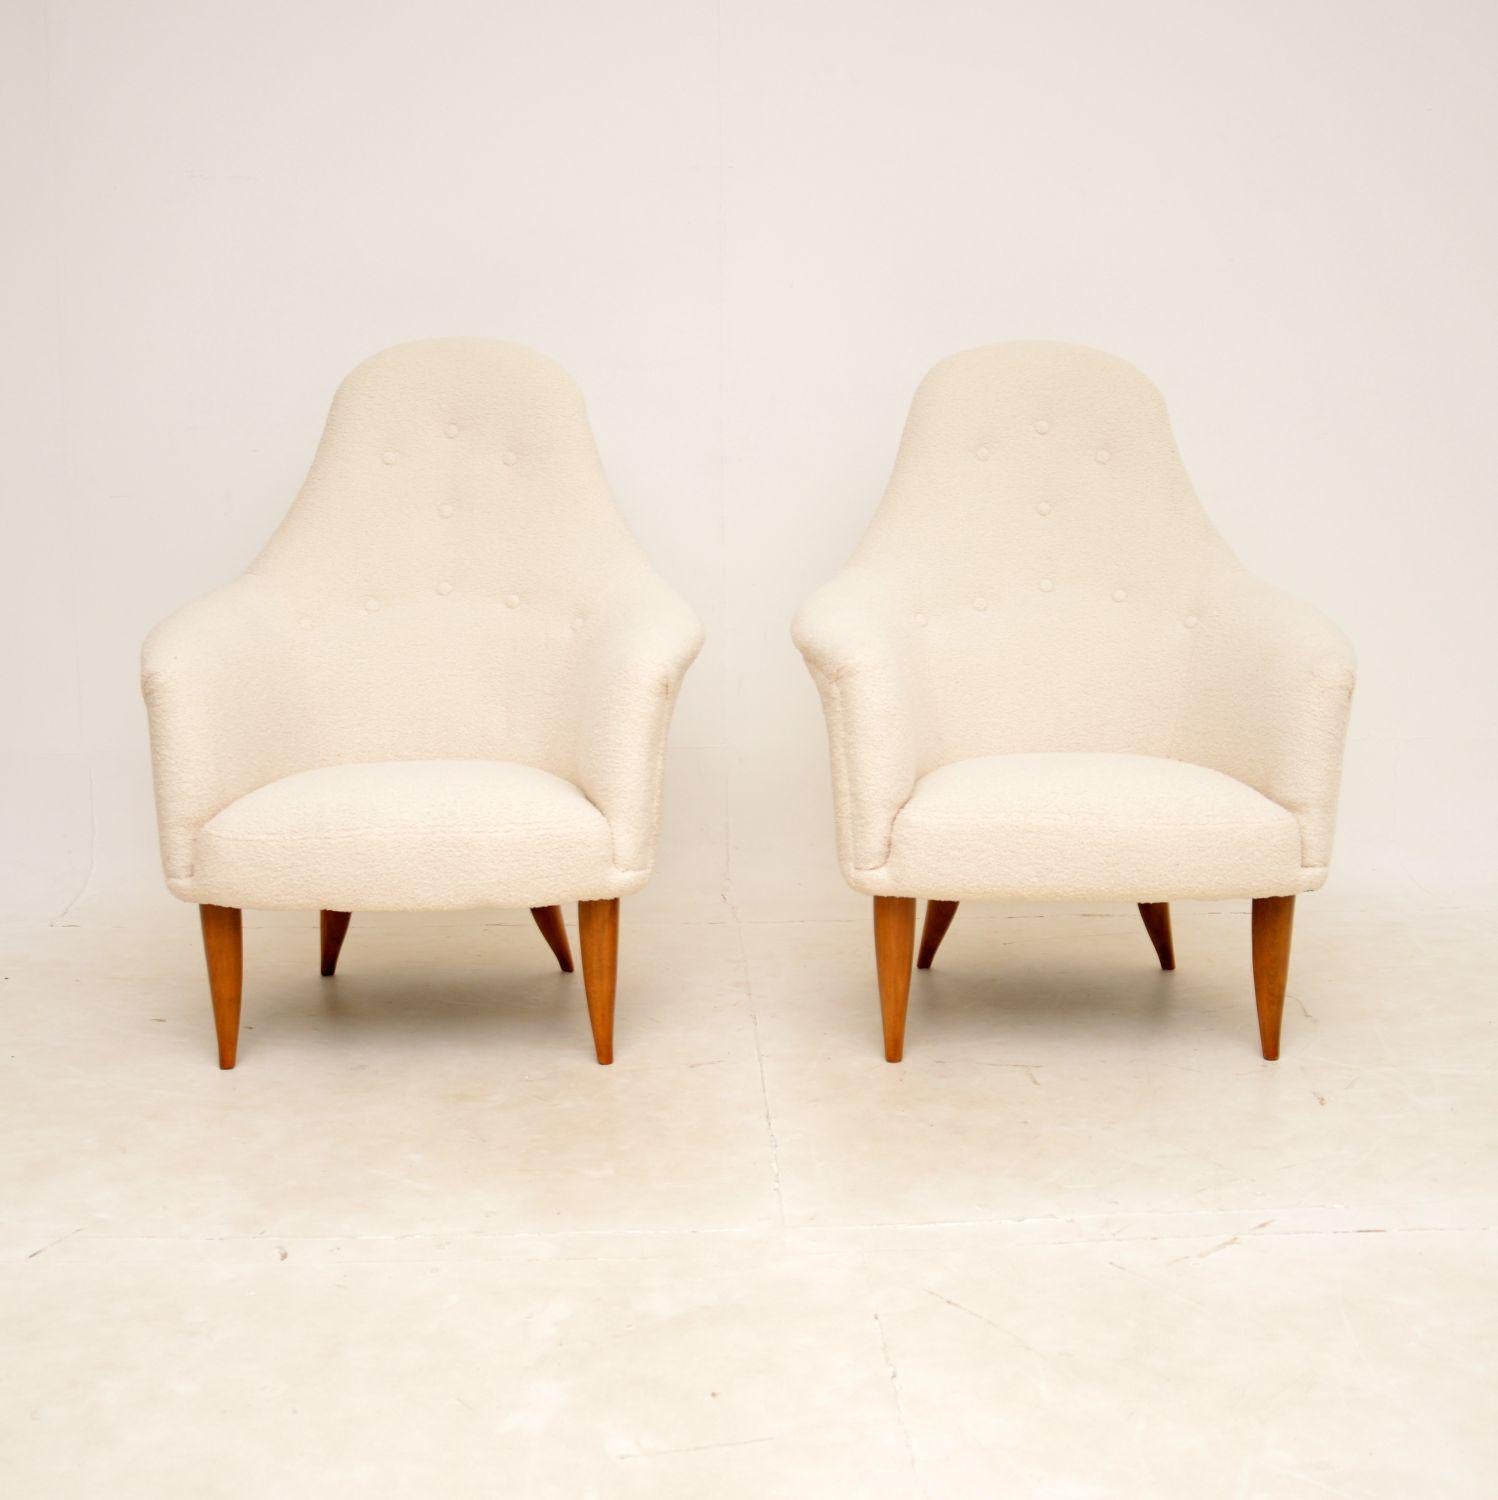 Une paire de fauteuils suédois vintage de Kerstin Horlin Holmquist absolument stupéfiante et très rare. Ce modèle s'appelle la chaise 